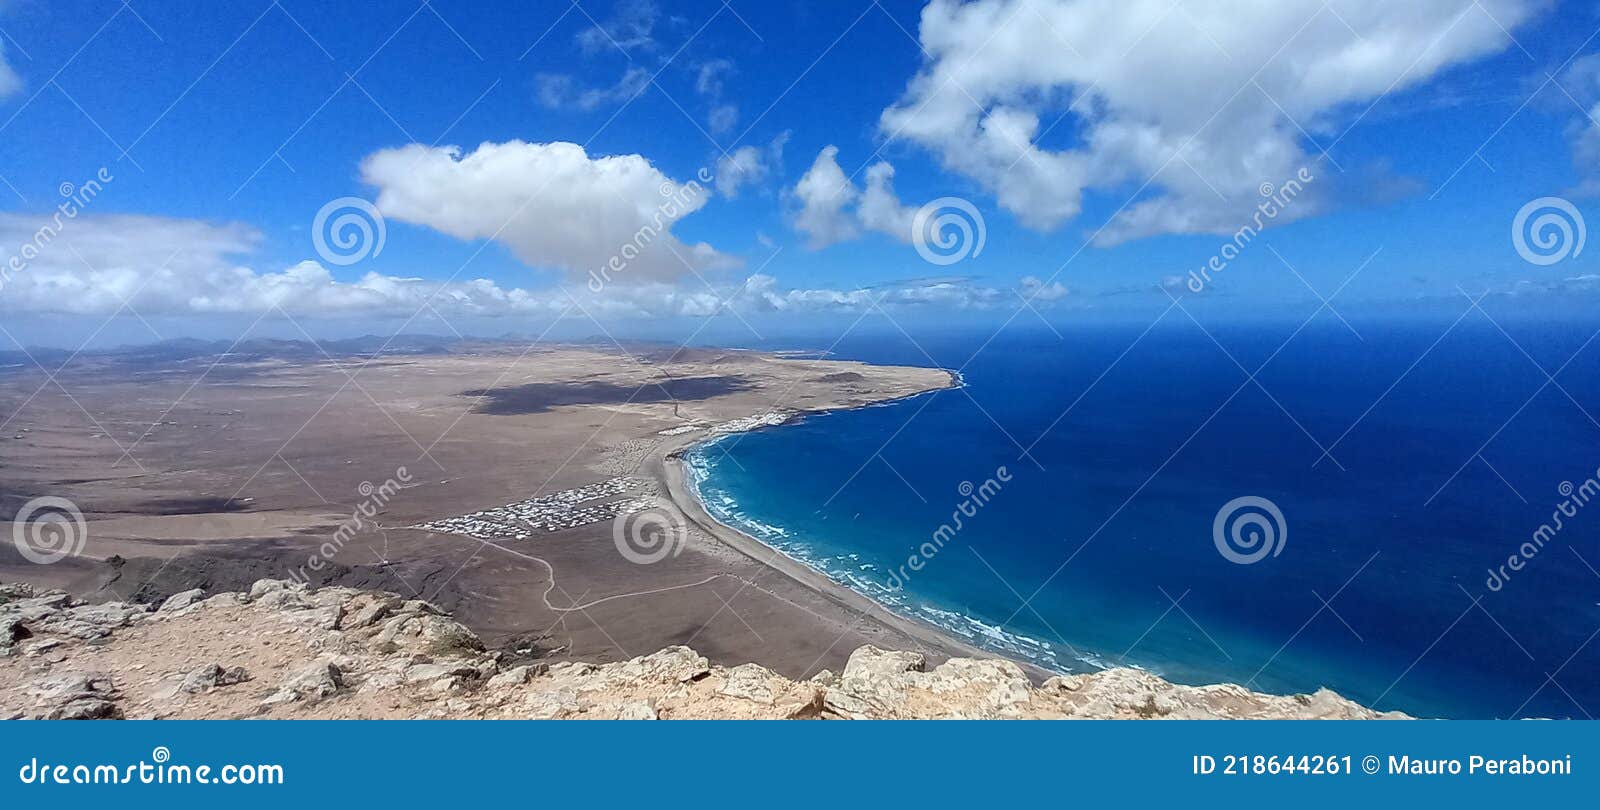 vista panoramica di famara, lanzarote (isole canarie)